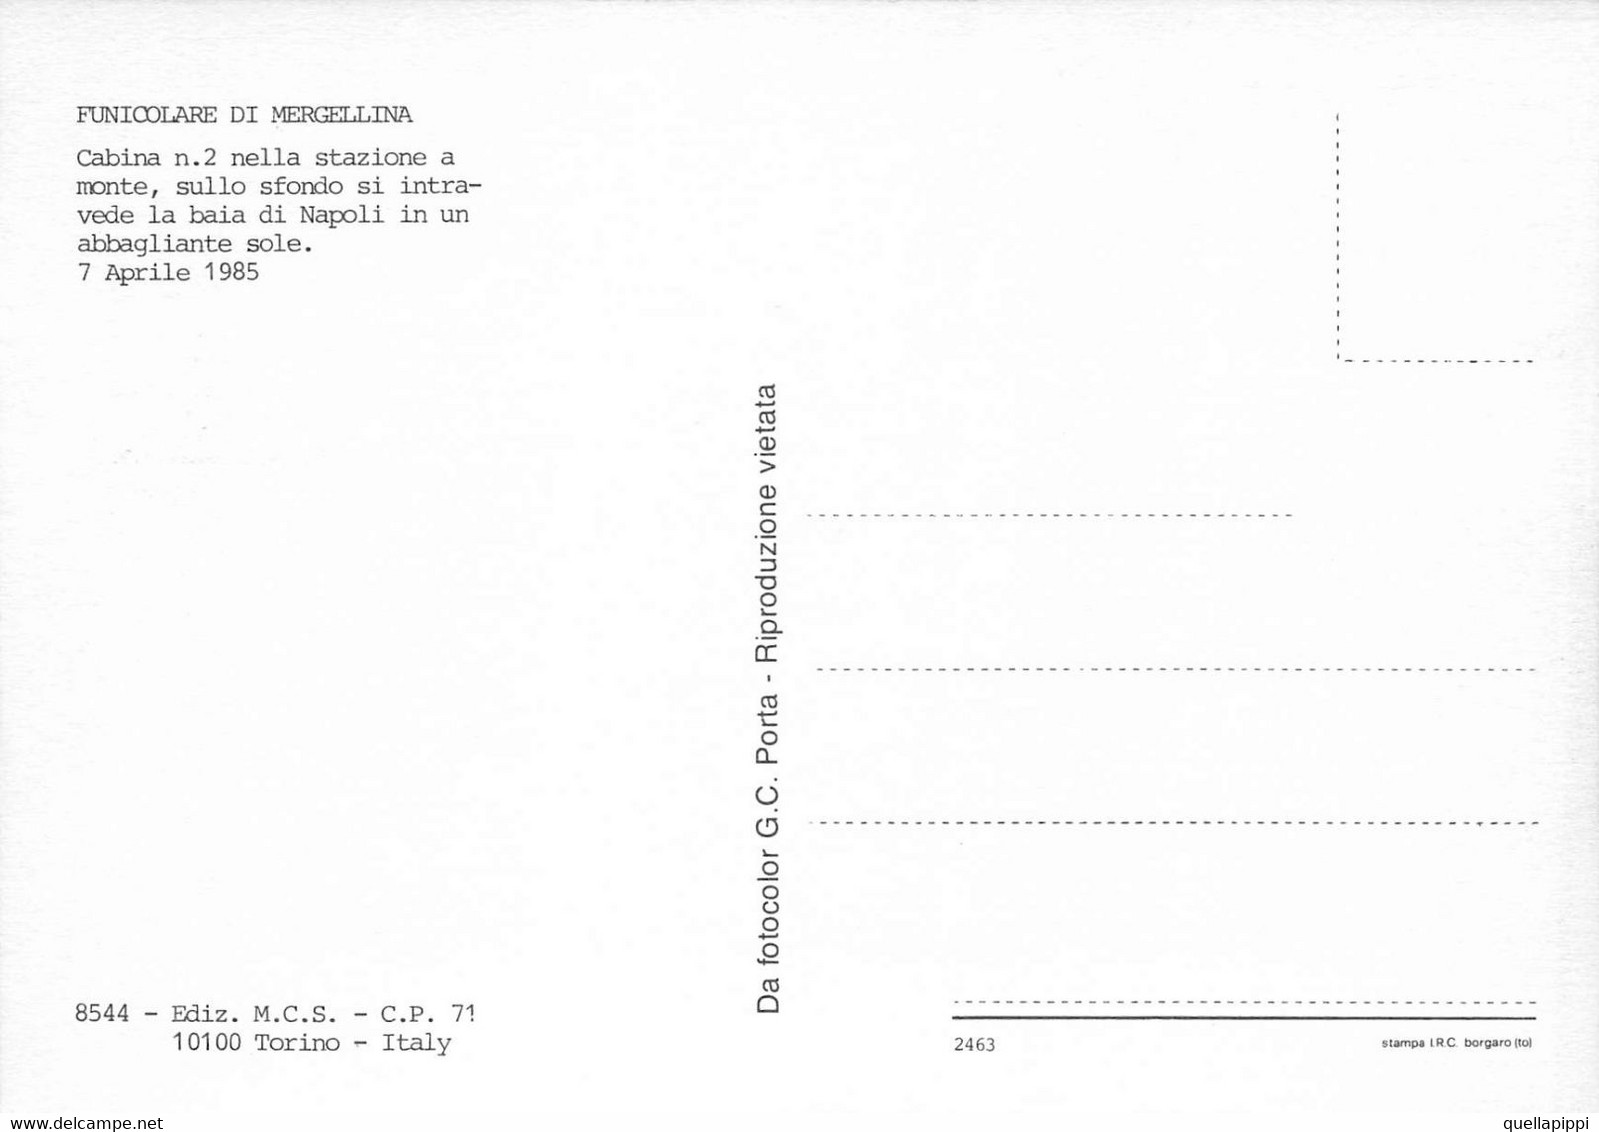 012616 "FUNICOLARE DI MERGELLINA-CABINA NR 2 NELLA STAZIONE A MONTE-SFONDO BAIA DI NAPOLI - 1985"  CART NON SPED - Funicular Railway